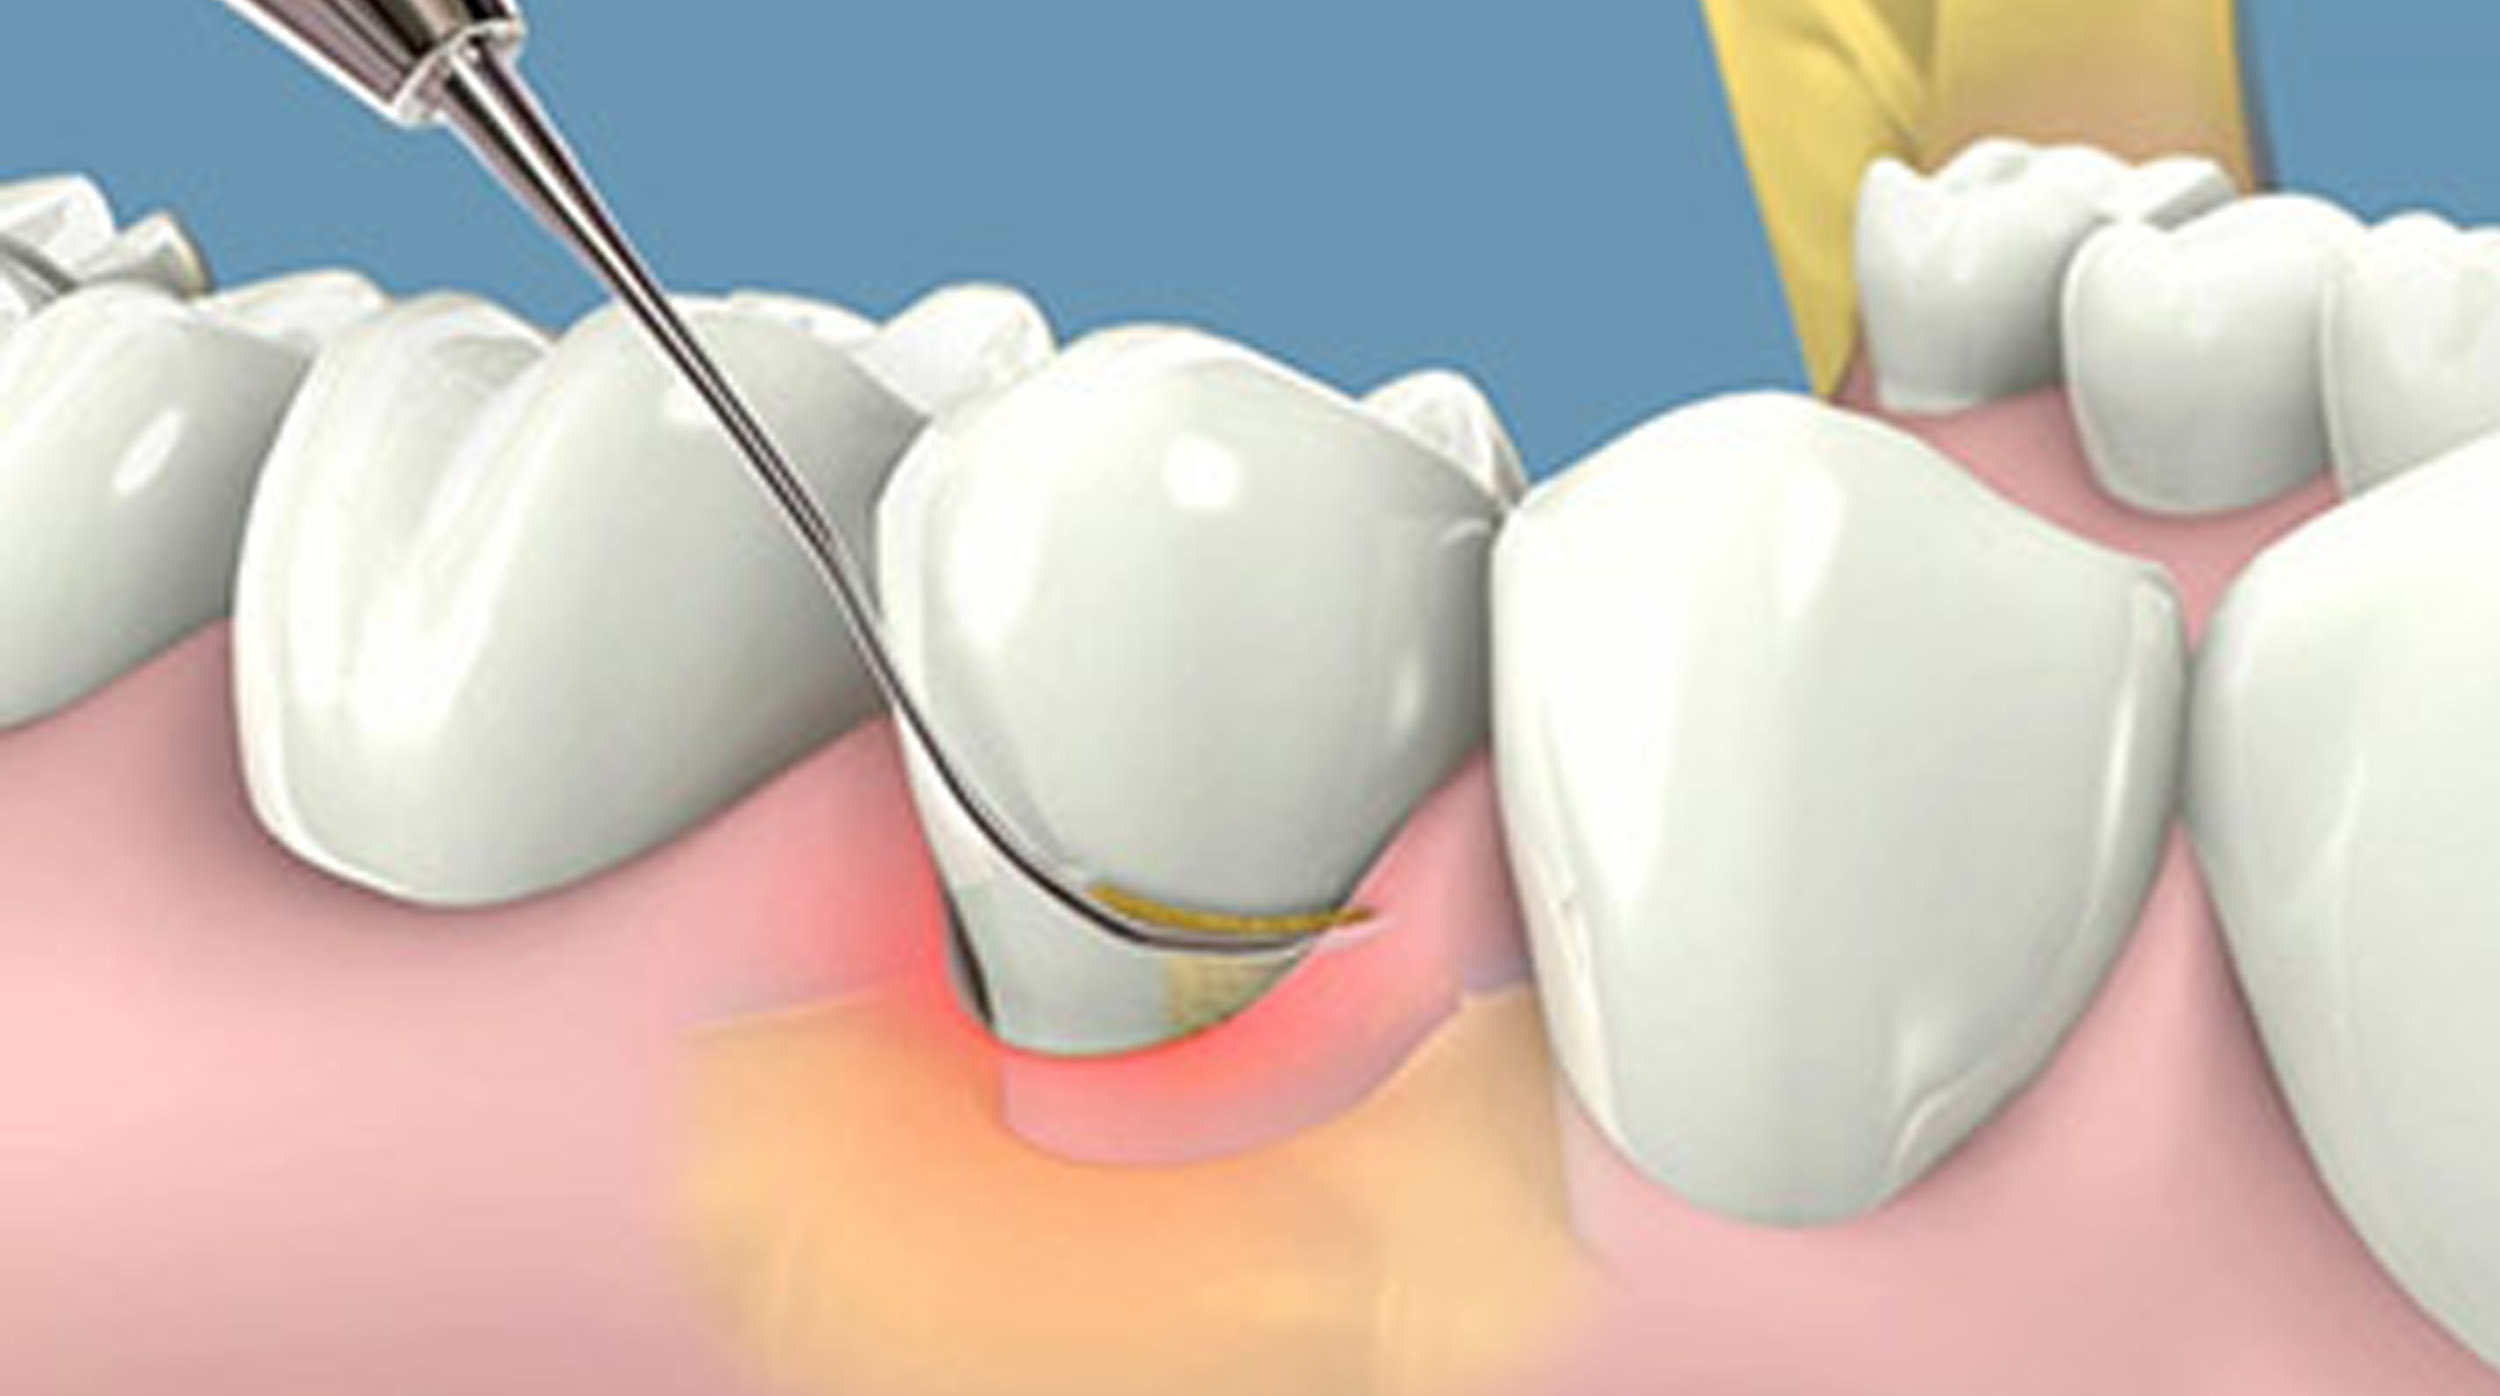 Thực hiện lấy cao răng bằng máy siêu âm hiện đại, chất lượng đem đến vượt xa kỹ thuật lấy cao răng trước đây